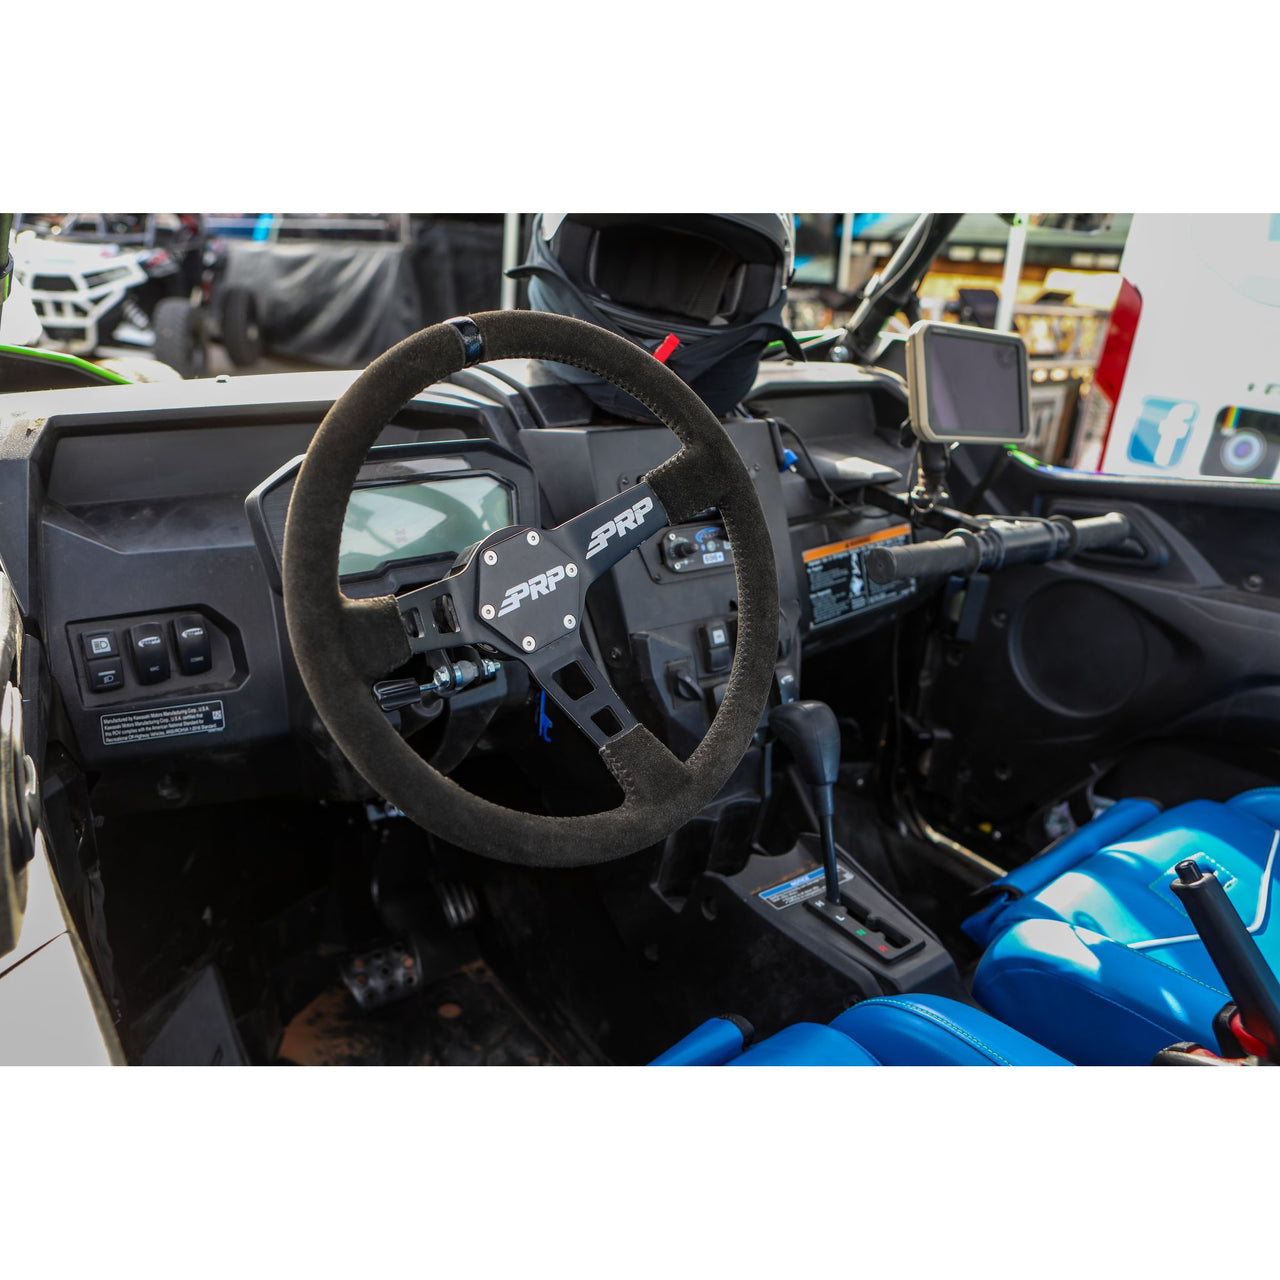 PRP Deep Dish Suede Steering Wheel- Black